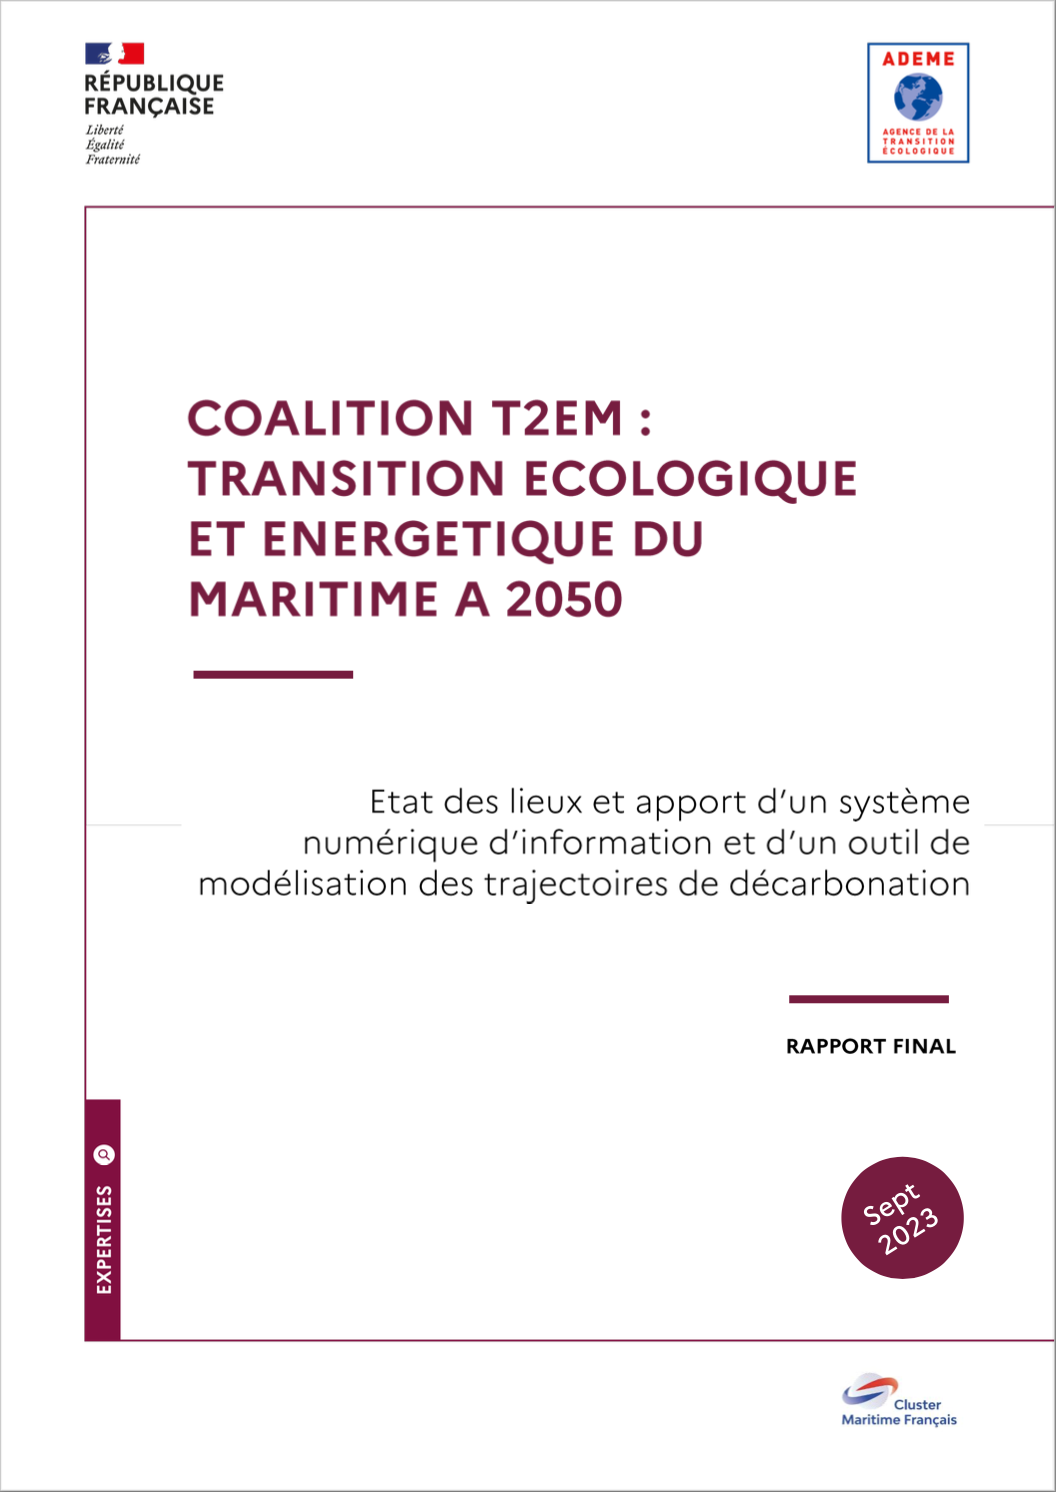 Étude « Coalition T2EM : Transition écologique et énergétique du maritime à 2050 » du Cluster Maritime Français